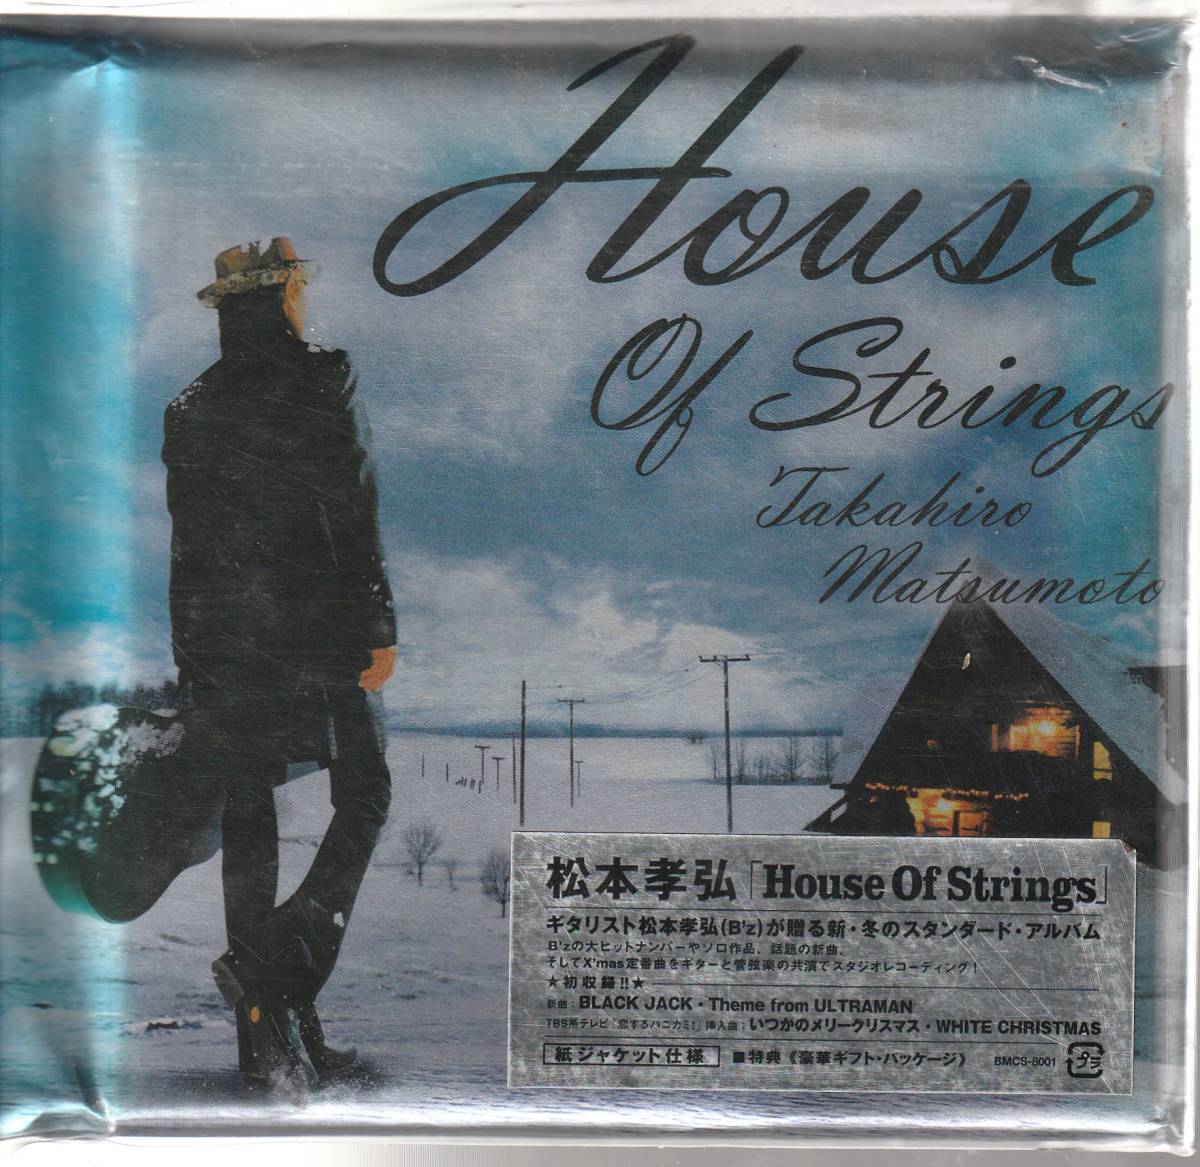 Takahiro Matsumoto "House of Strings" Спецификация бумажной куртки, не используемый / нераскрытый